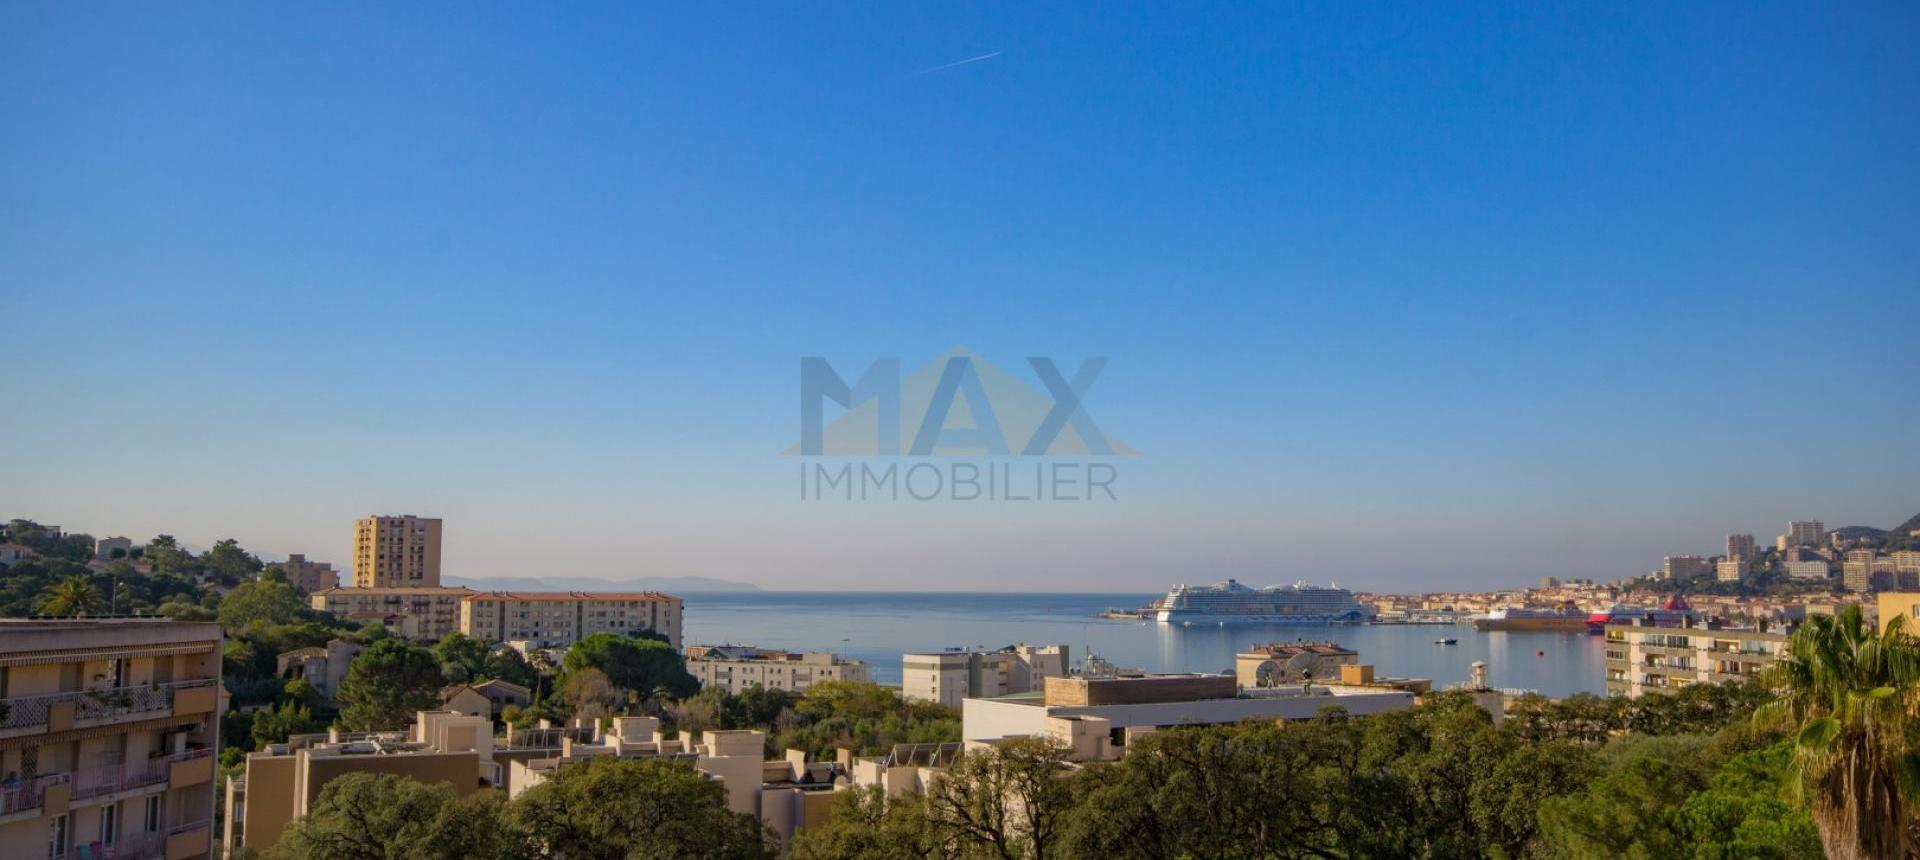 En Corse, à Ajaccio, à vendre dans le quartier de Pietralba beau F3 avec vue mer